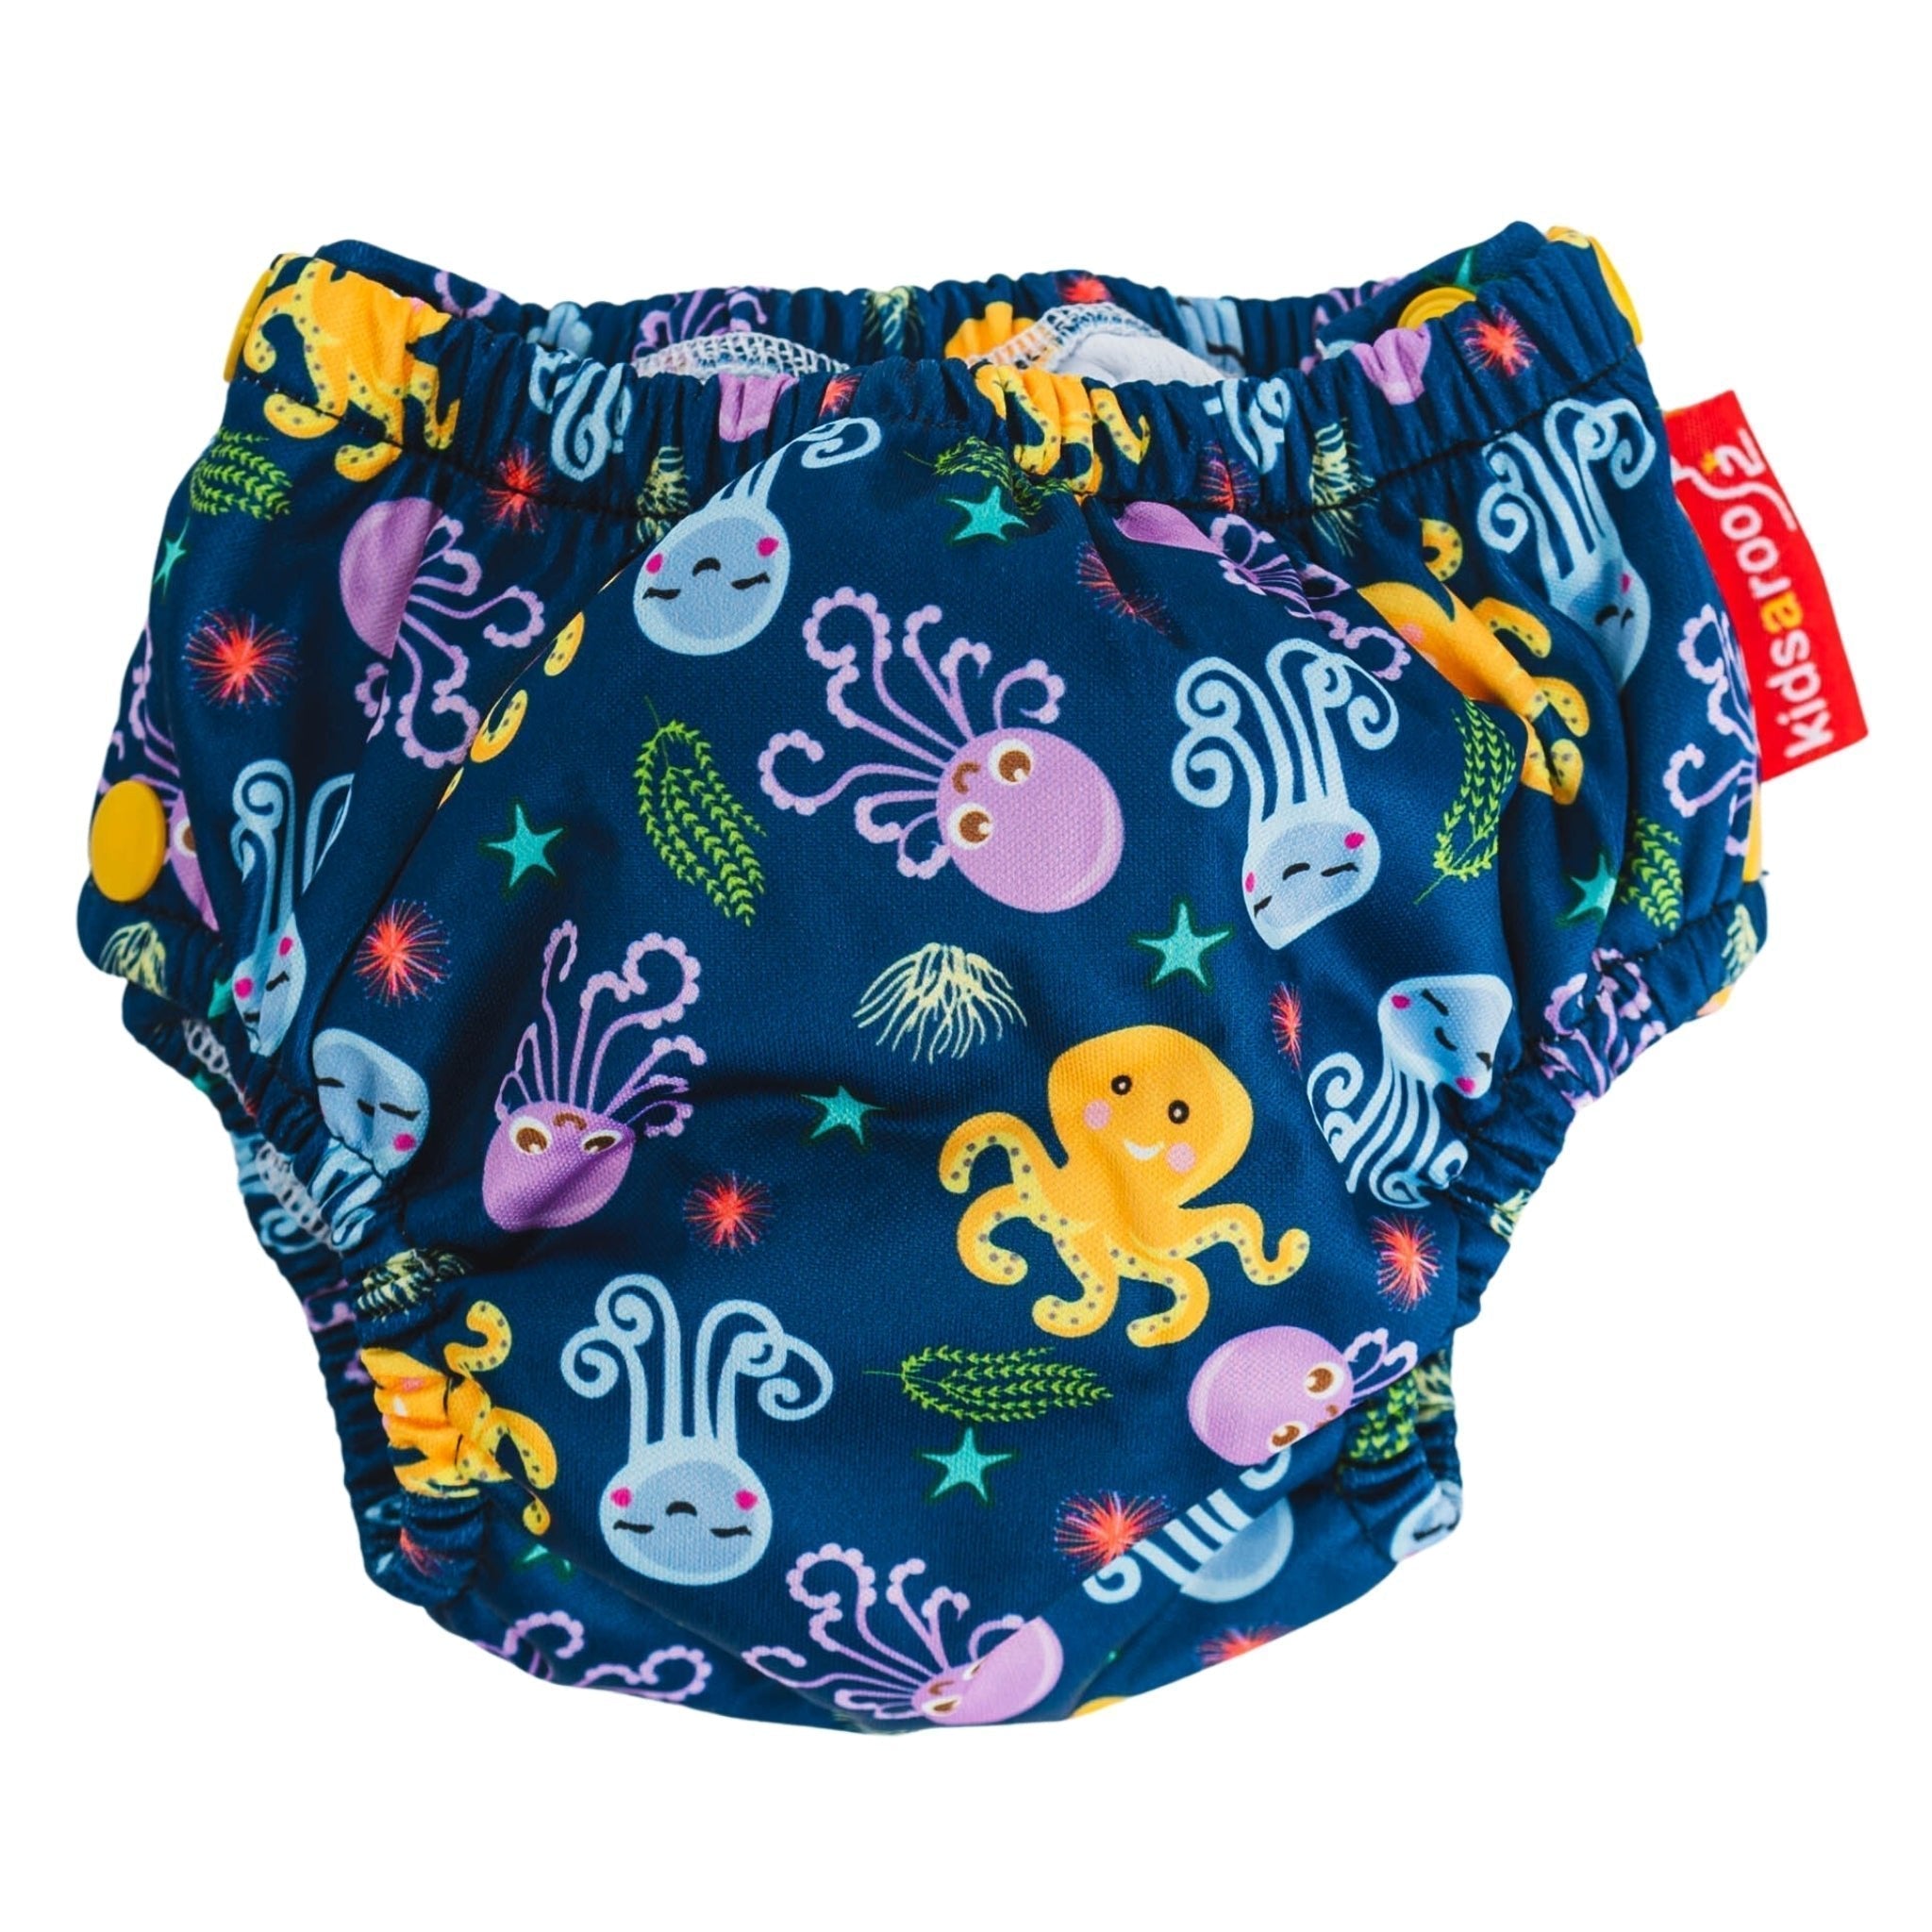 Swim Nappy & Mini Wet Bag Set - Size large -11+kg - Kidsaroo